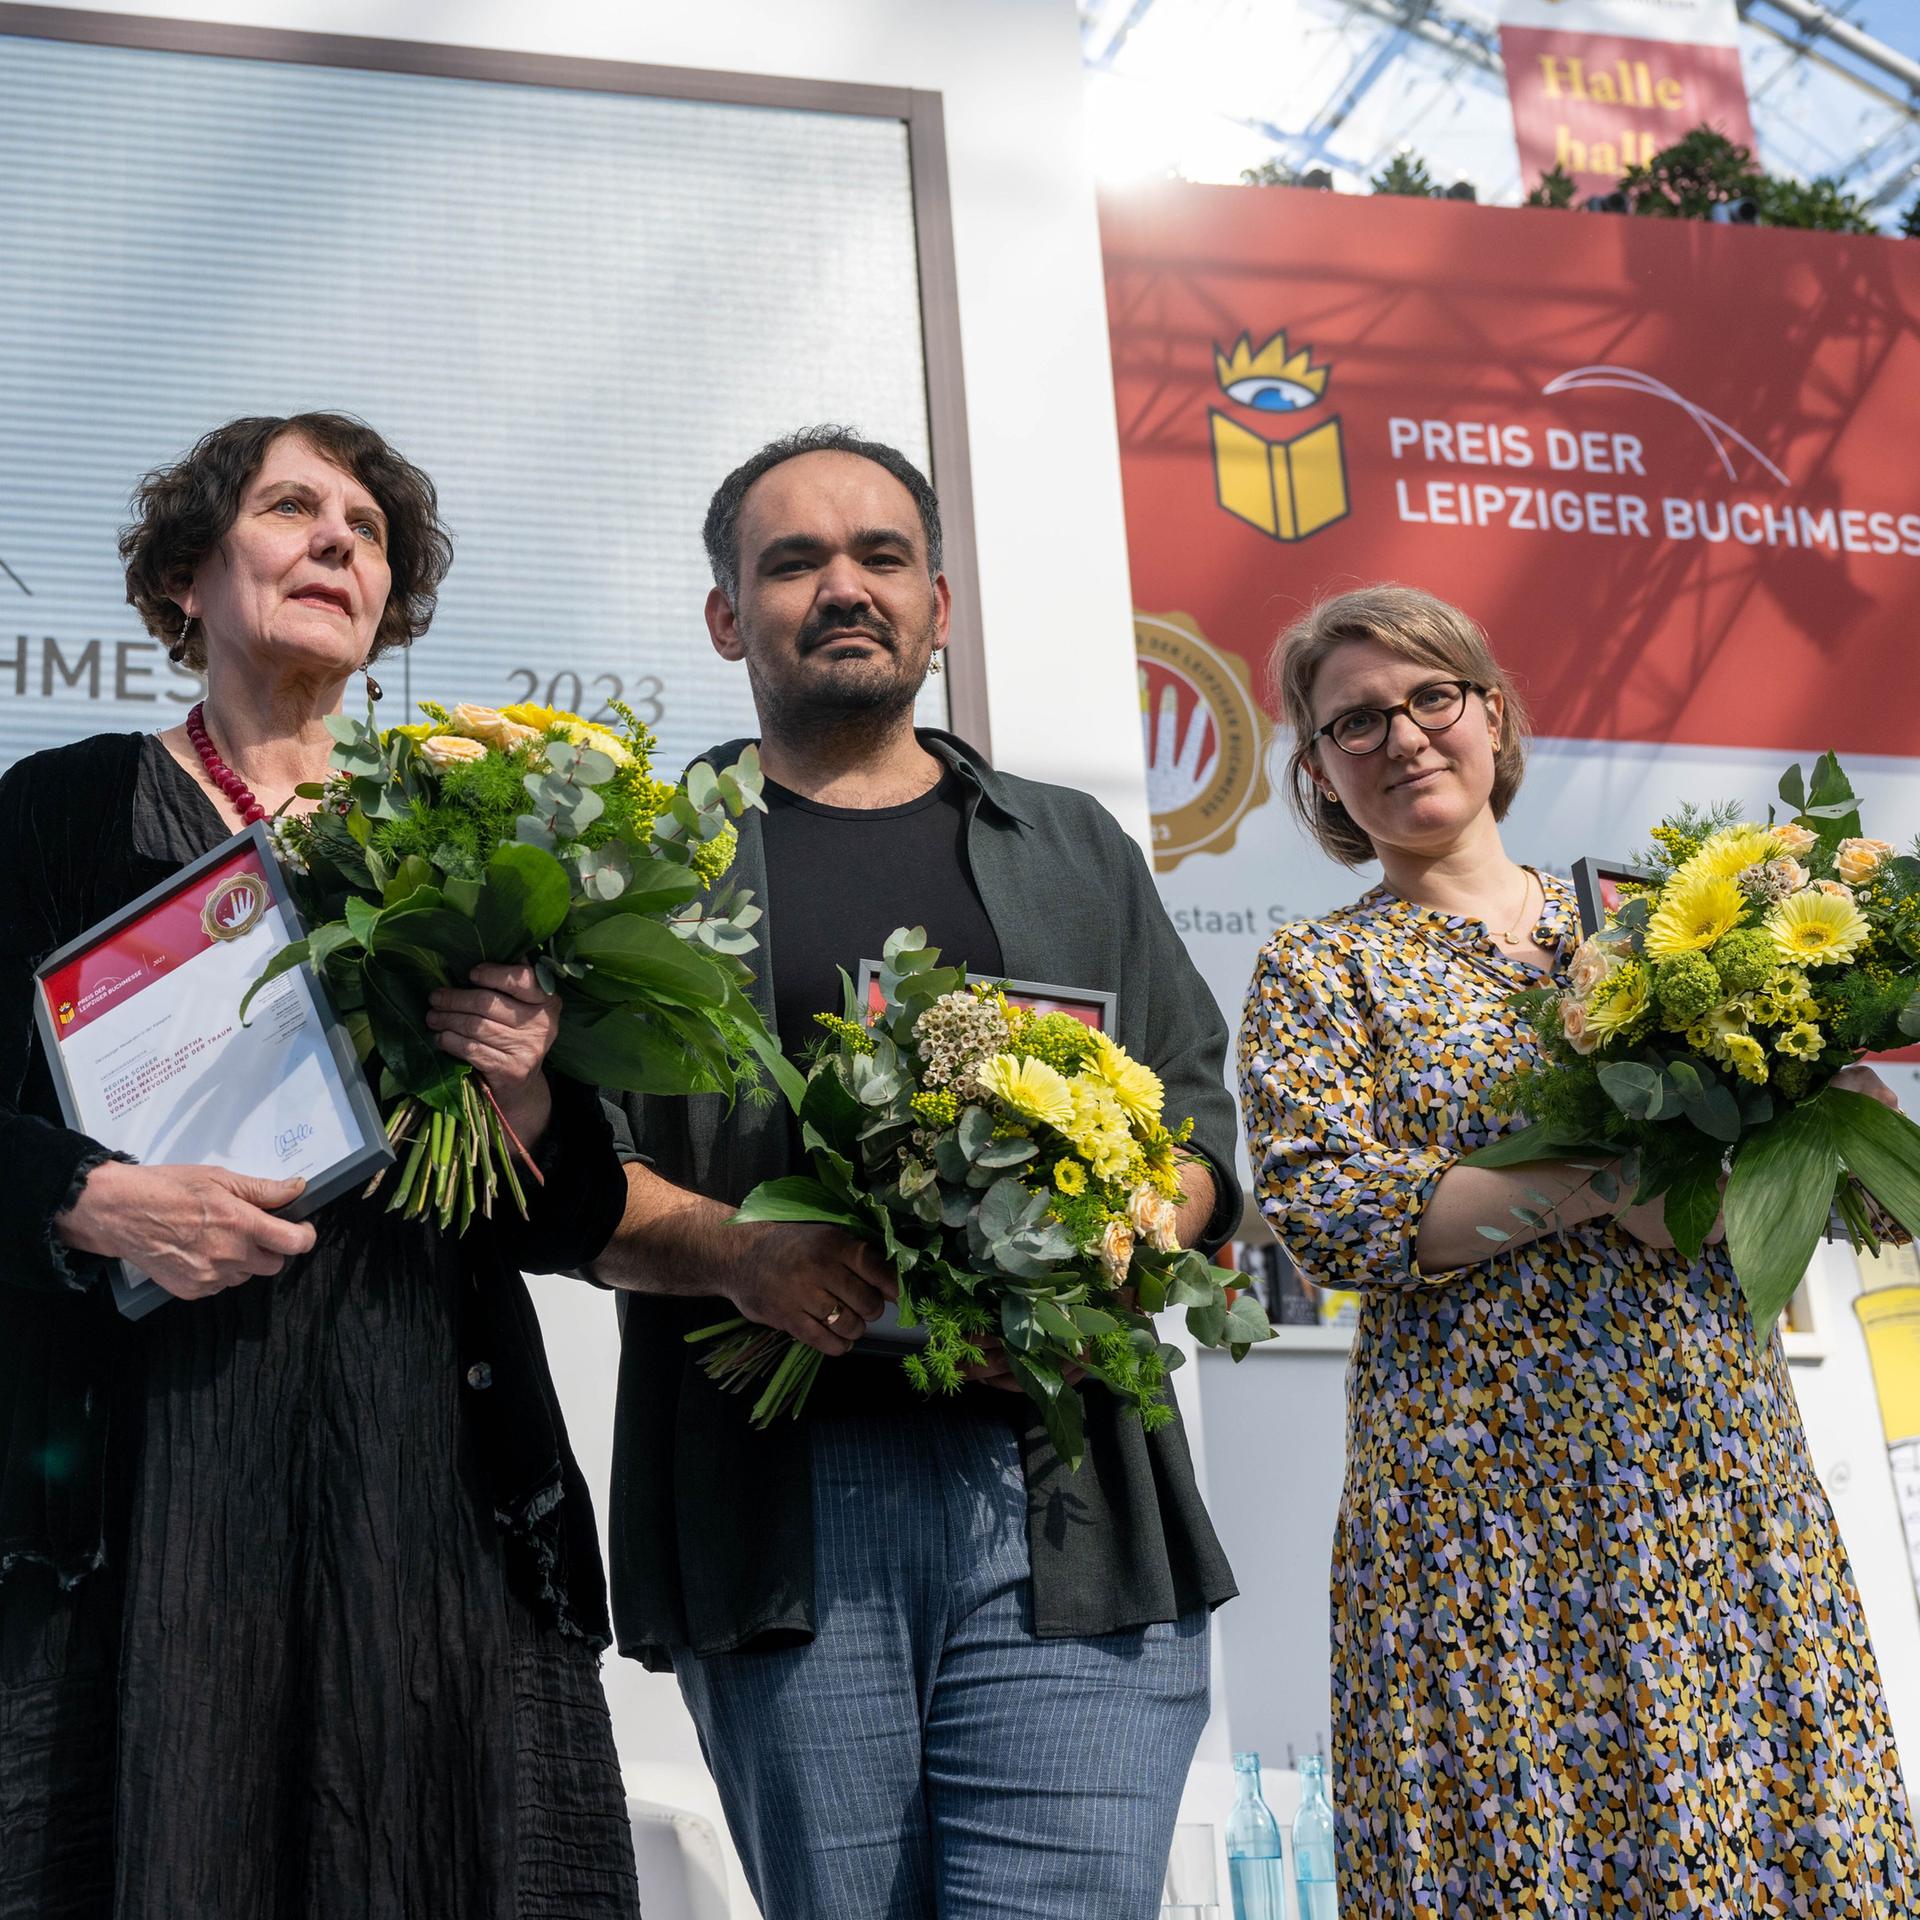 Preis der Leipziger Buchmesse – Eine Verneigung vor übersehenen Frauen